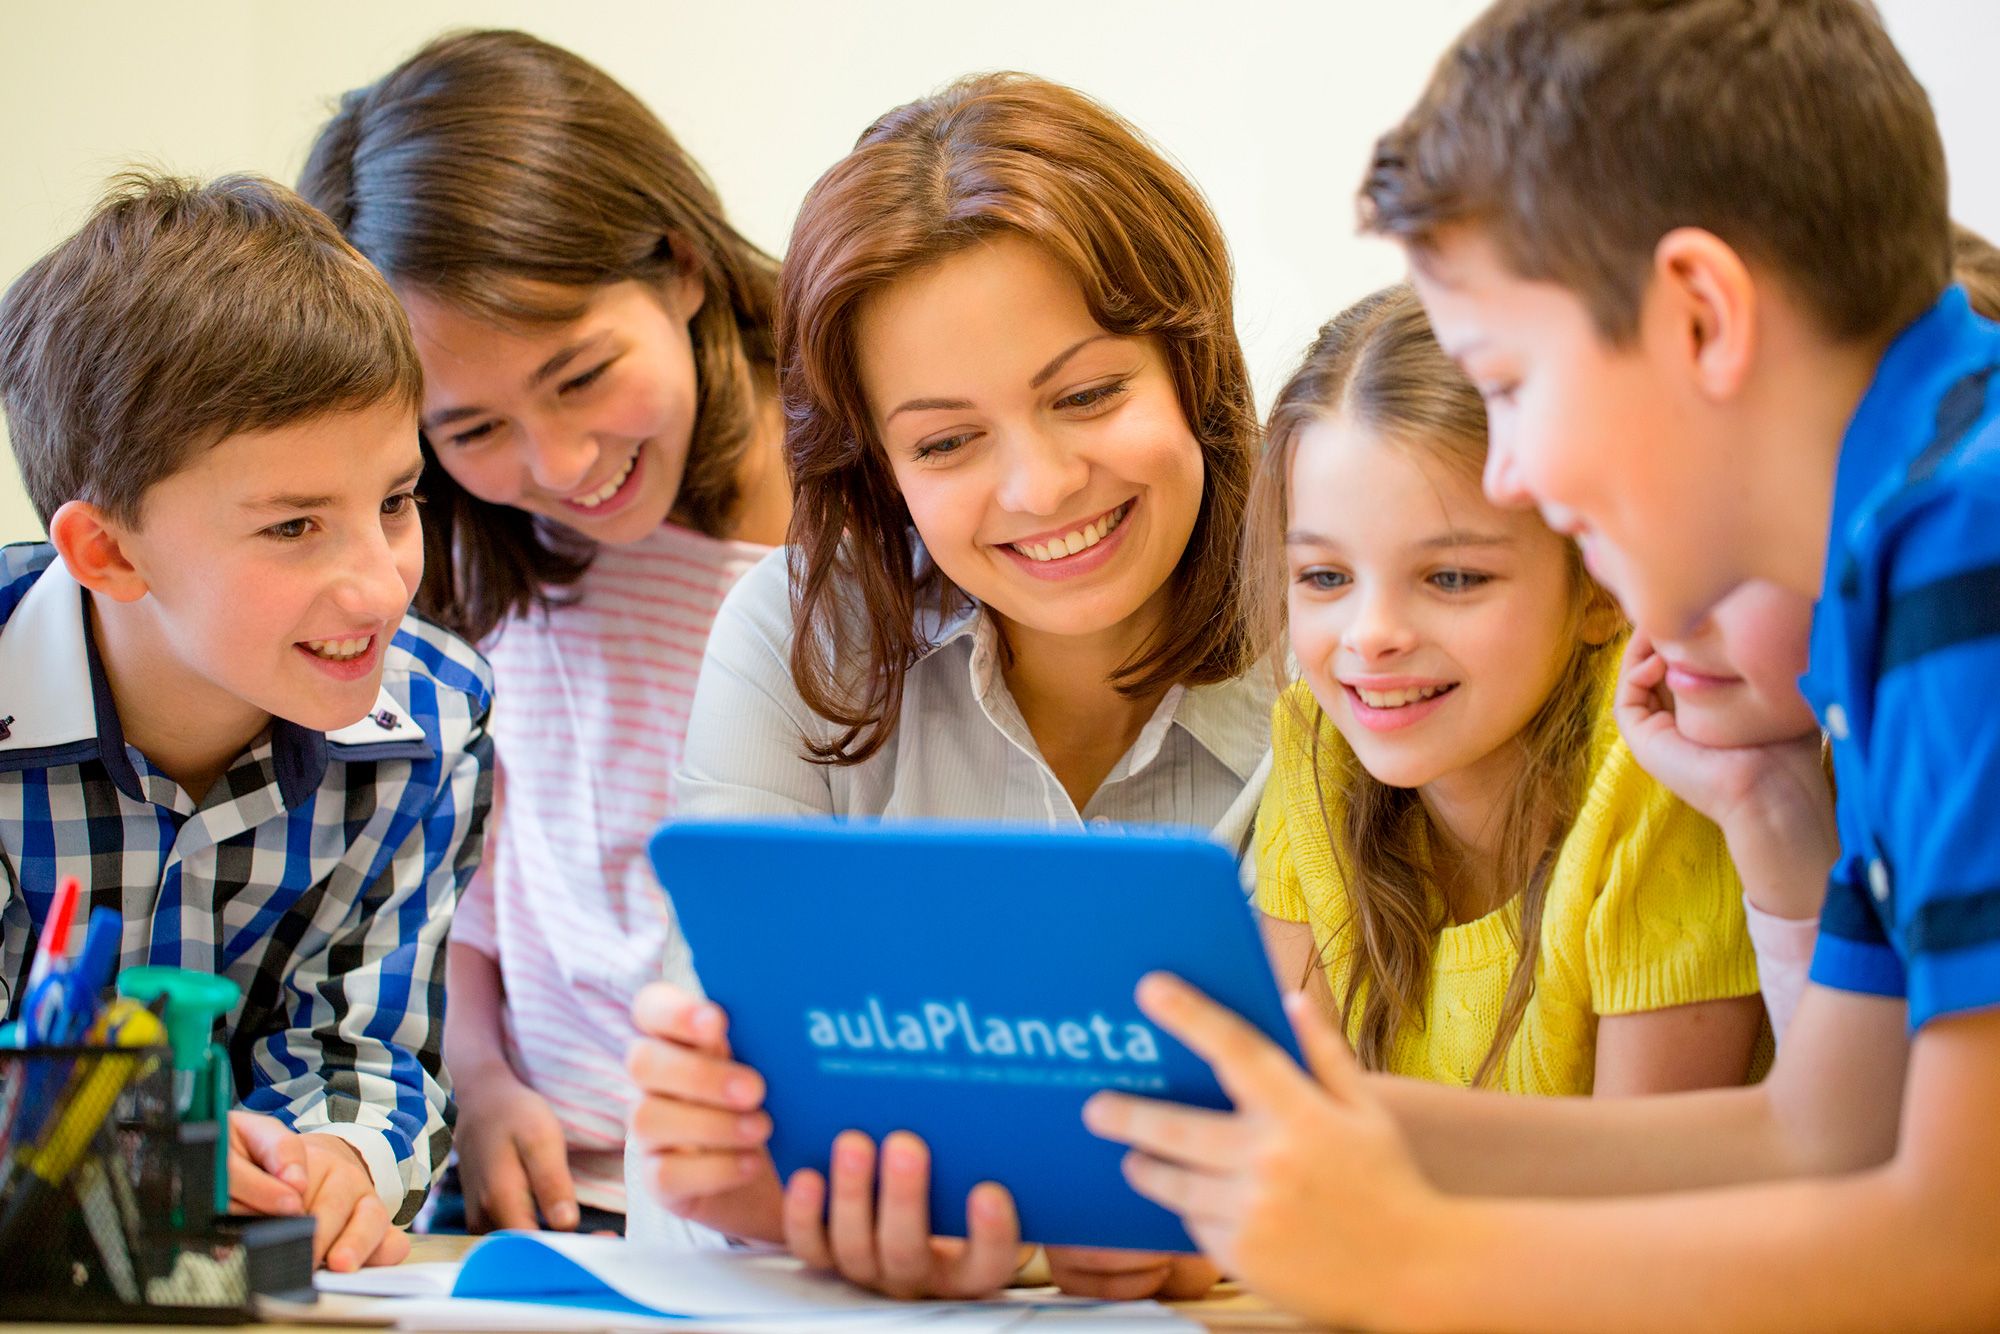 aulaPlaneta ofrece educación online gratuita a los escolares a través de su plataforma educativa